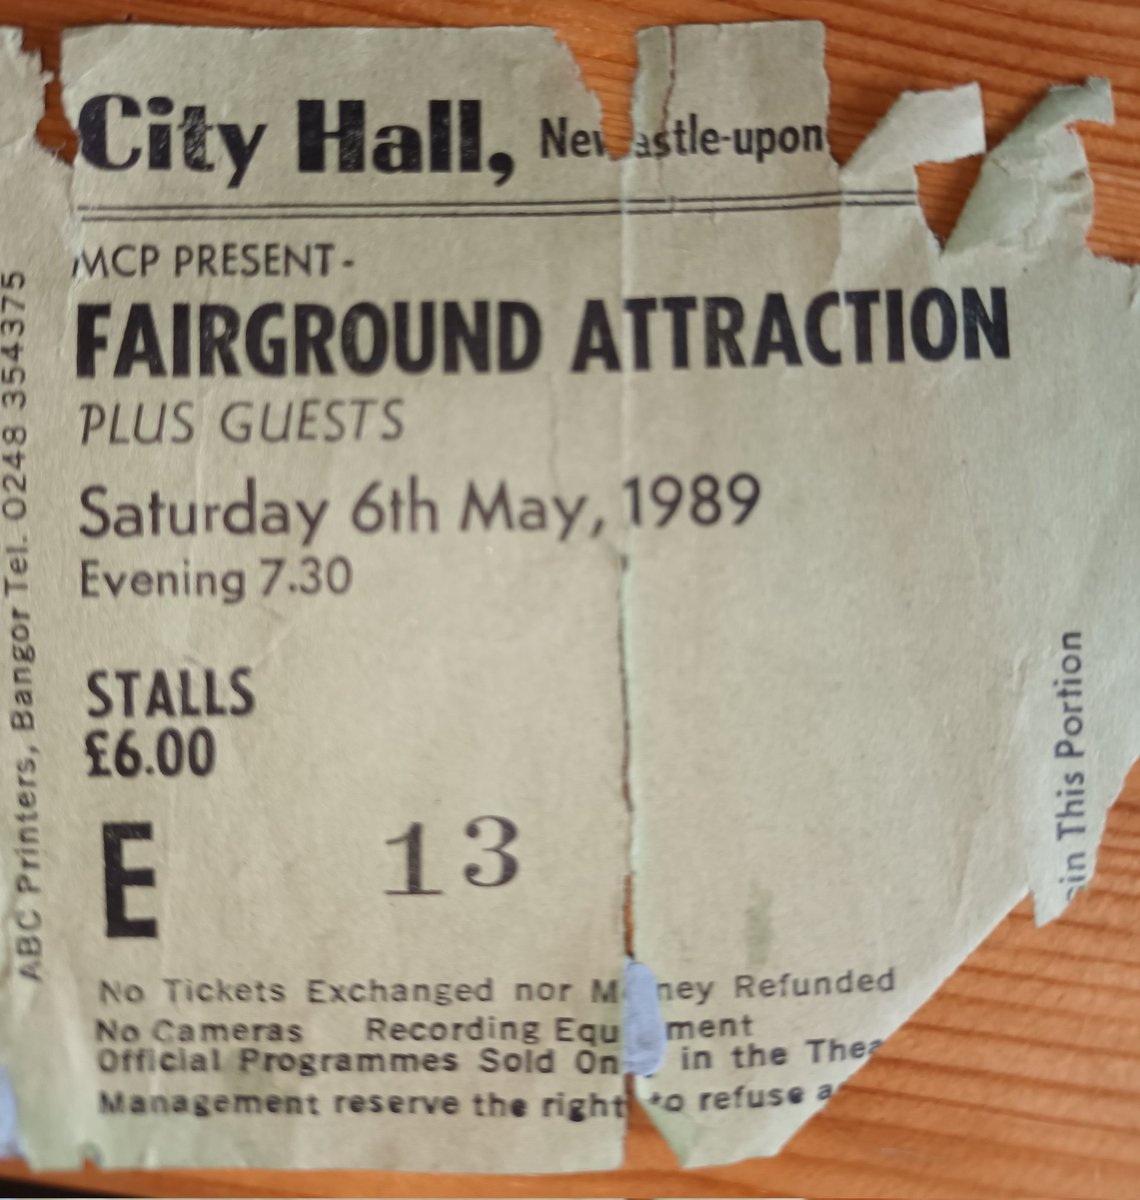 35 years ago today... My first @FairgroundA gig